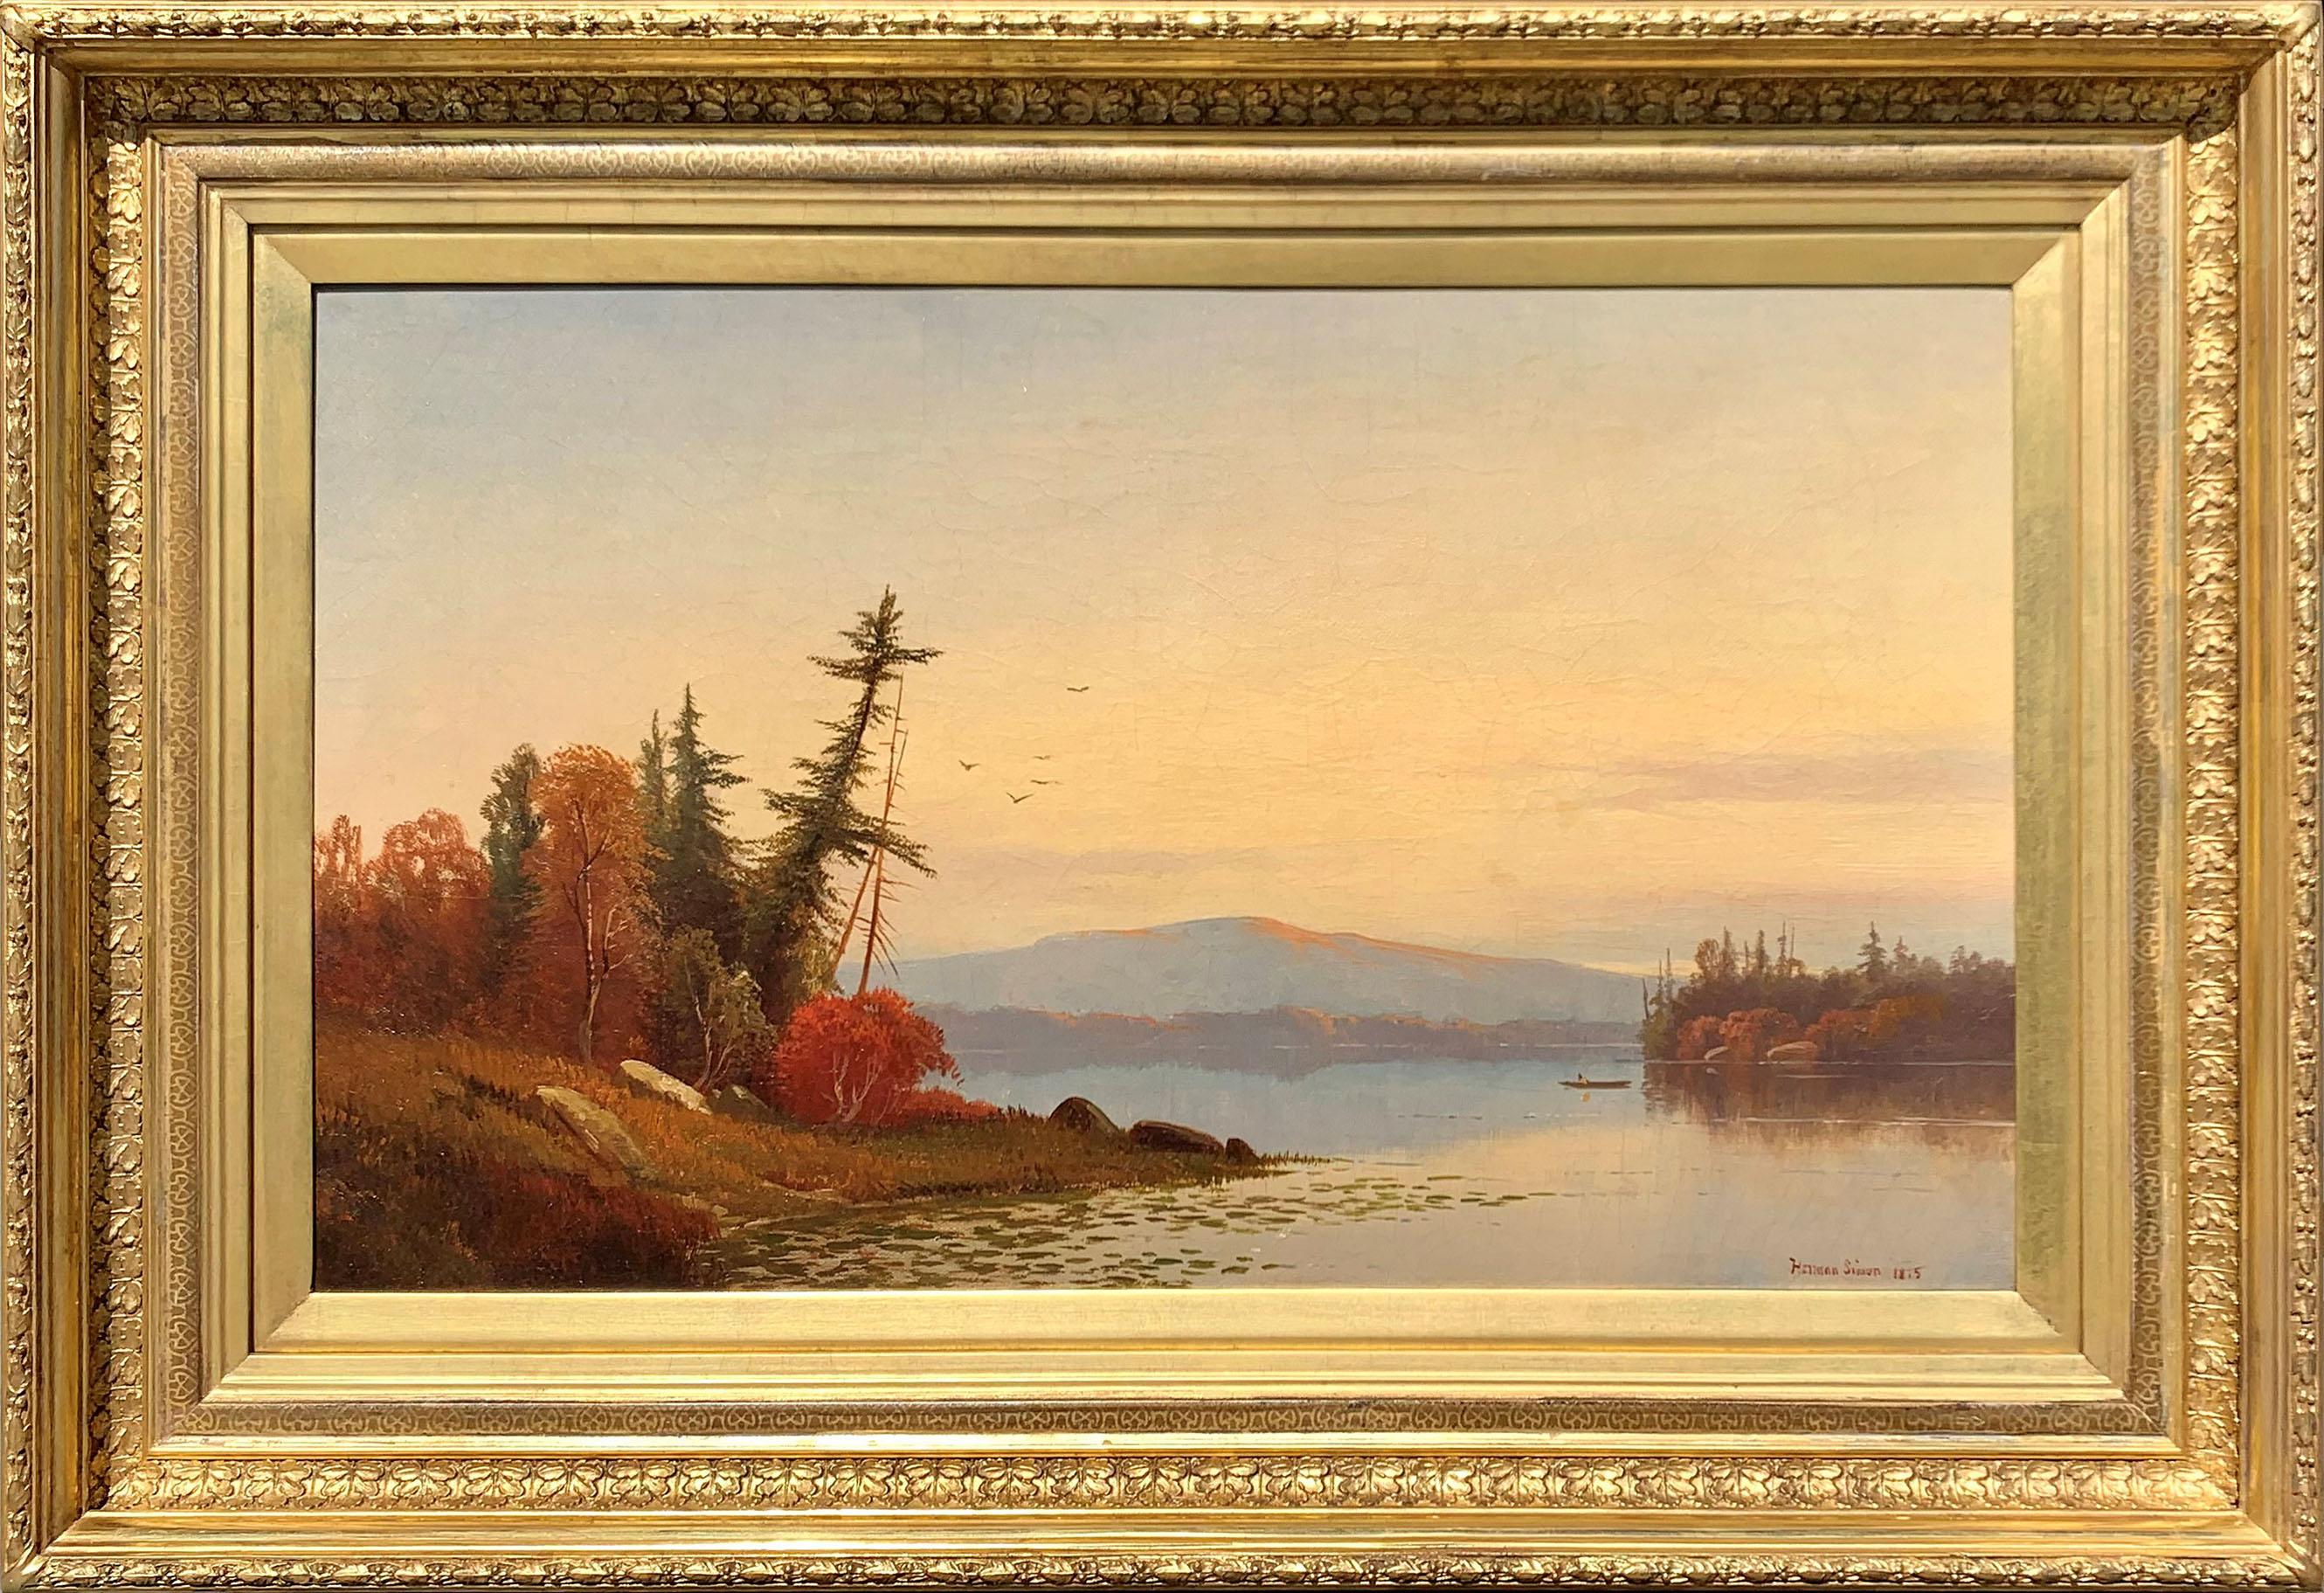 Gemalt von Hudson River School Künstler Hermann Simon (1846-1895), "Sunset on the Hudson River" ist Öl auf Leinwand, misst 15 x 25 Zoll, und ist signiert und datiert 1875 auf der unteren rechten Seite. Das Werk ist in einem zeitgemäßen Rahmen